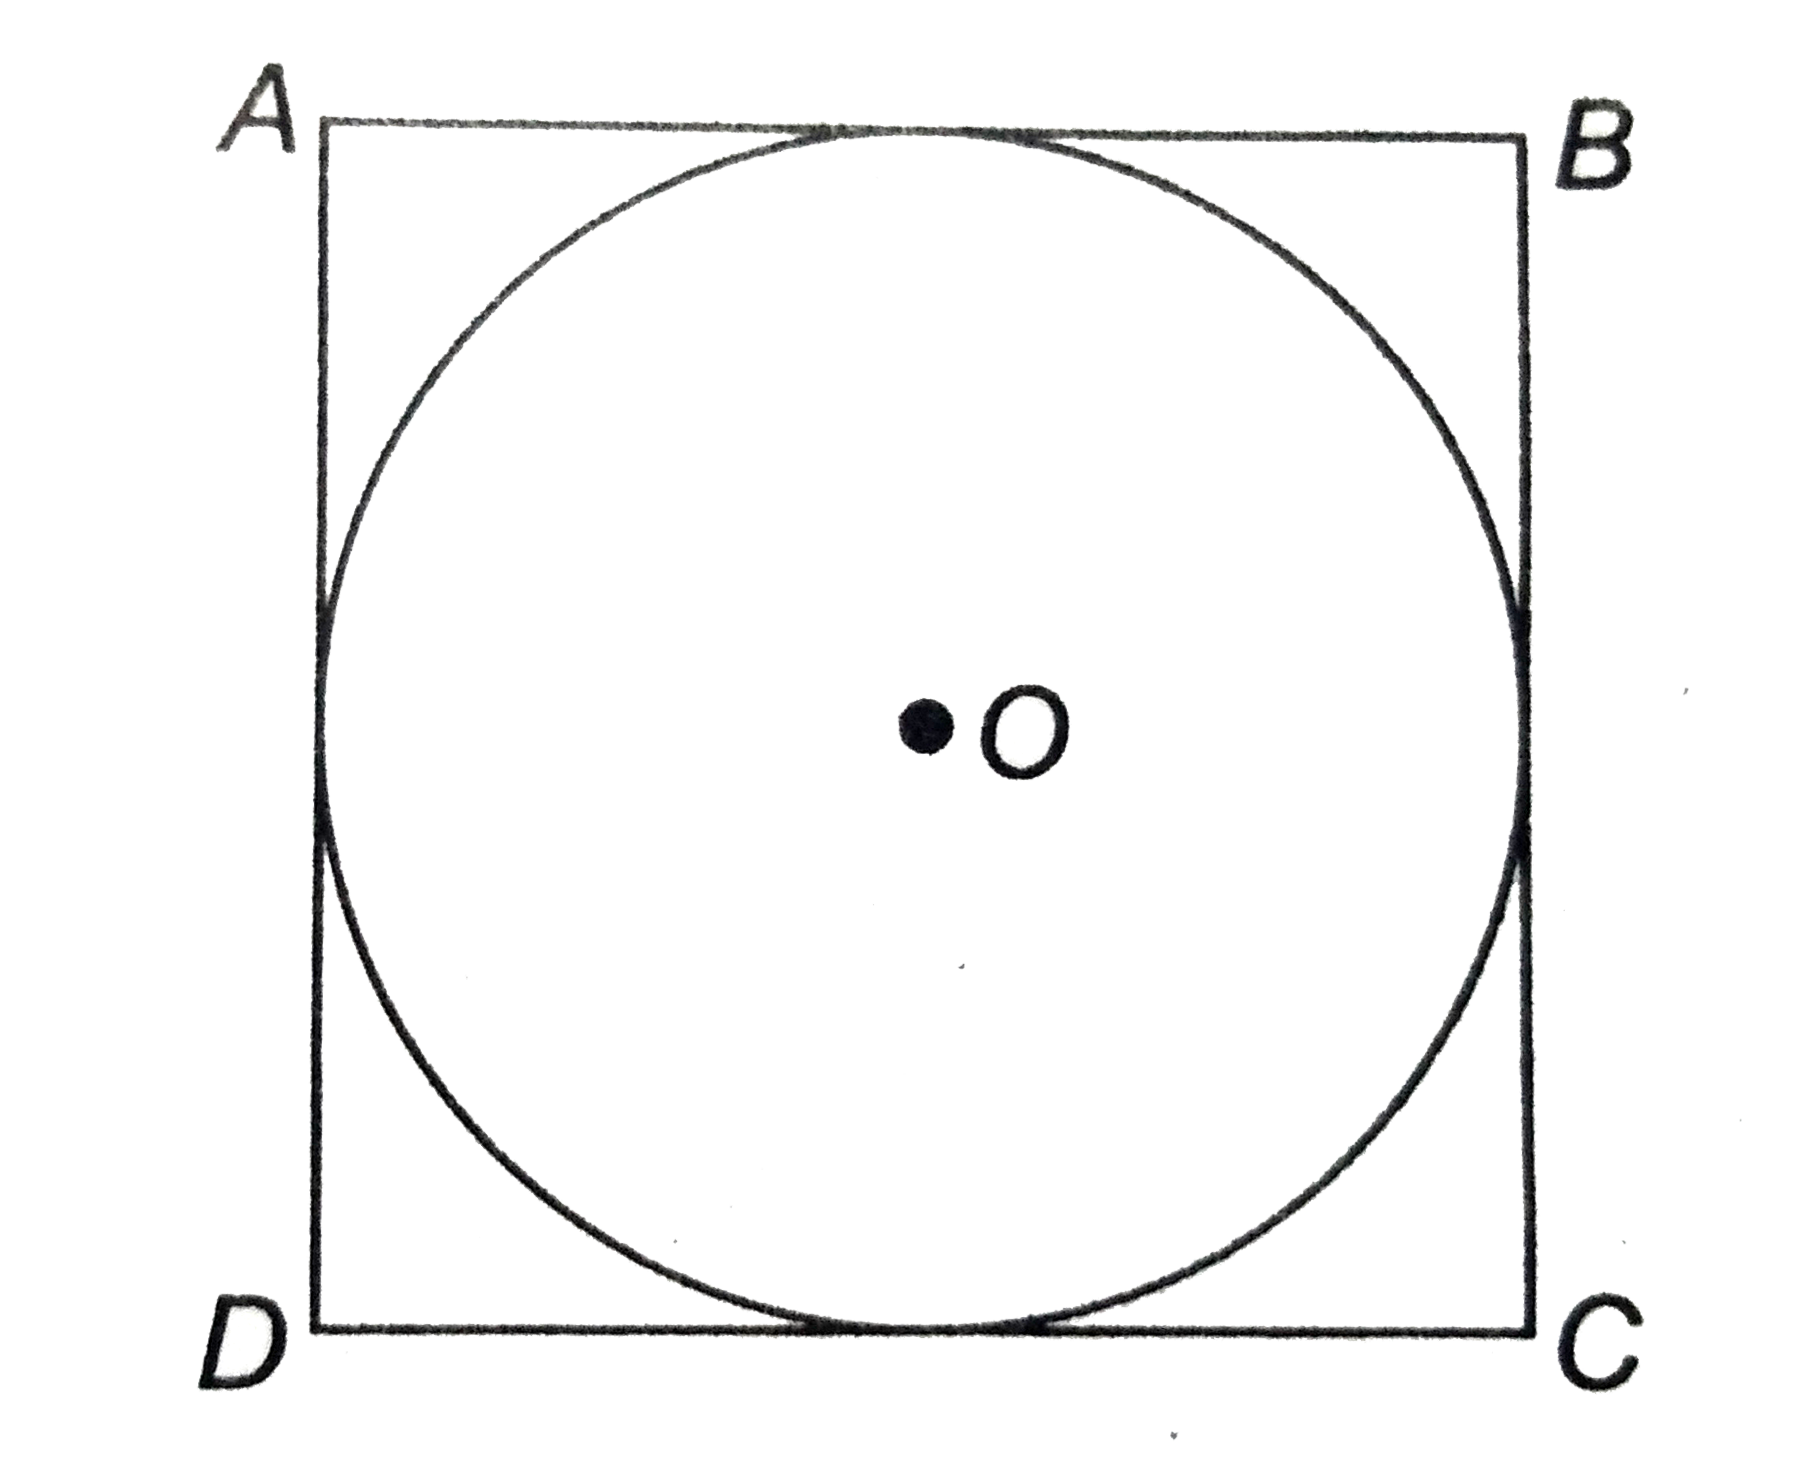 संलग्न  चित्र में , ABCD  14 सेमी भुजा  का एक  वर्ग है । वृत्त की त्रिज्या  ज्ञात कीजिए ।